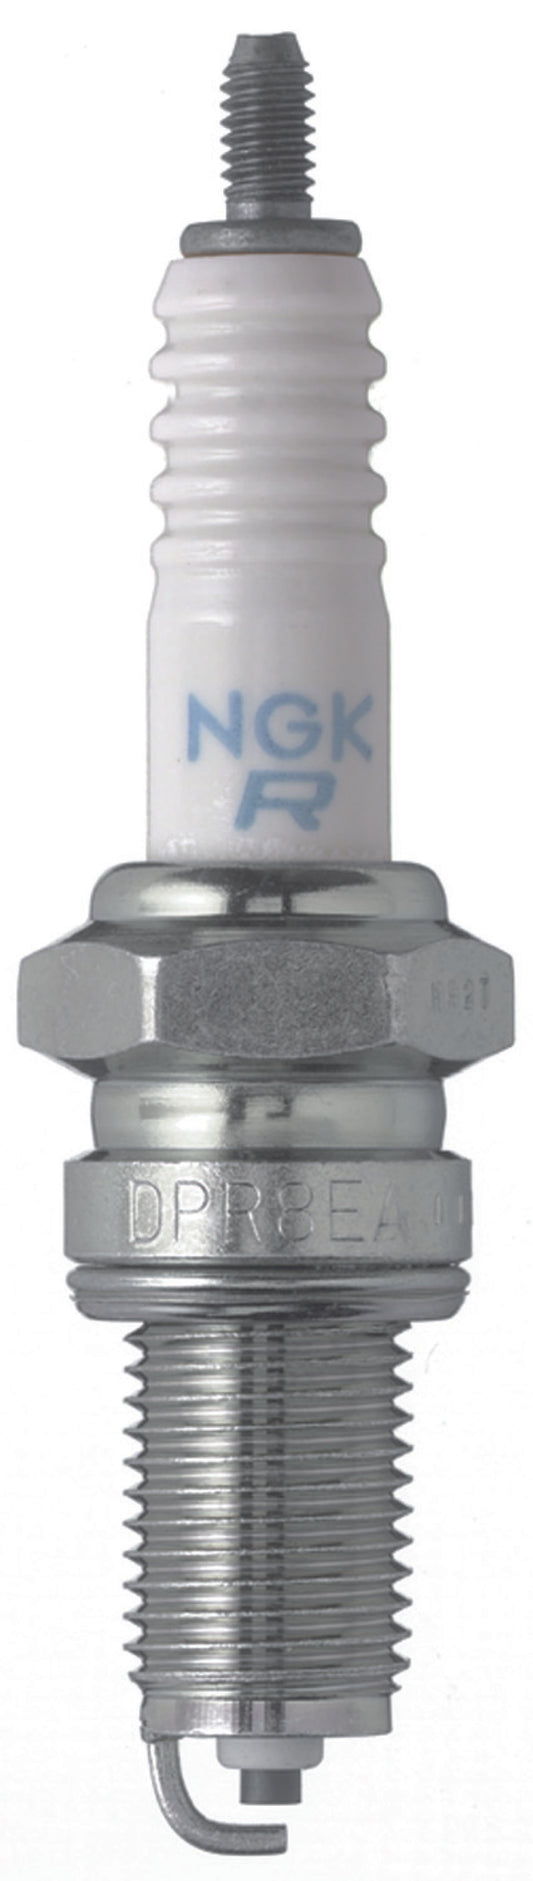 NGK Standard Spark Plug Box of 10 (DPR9EA-9)